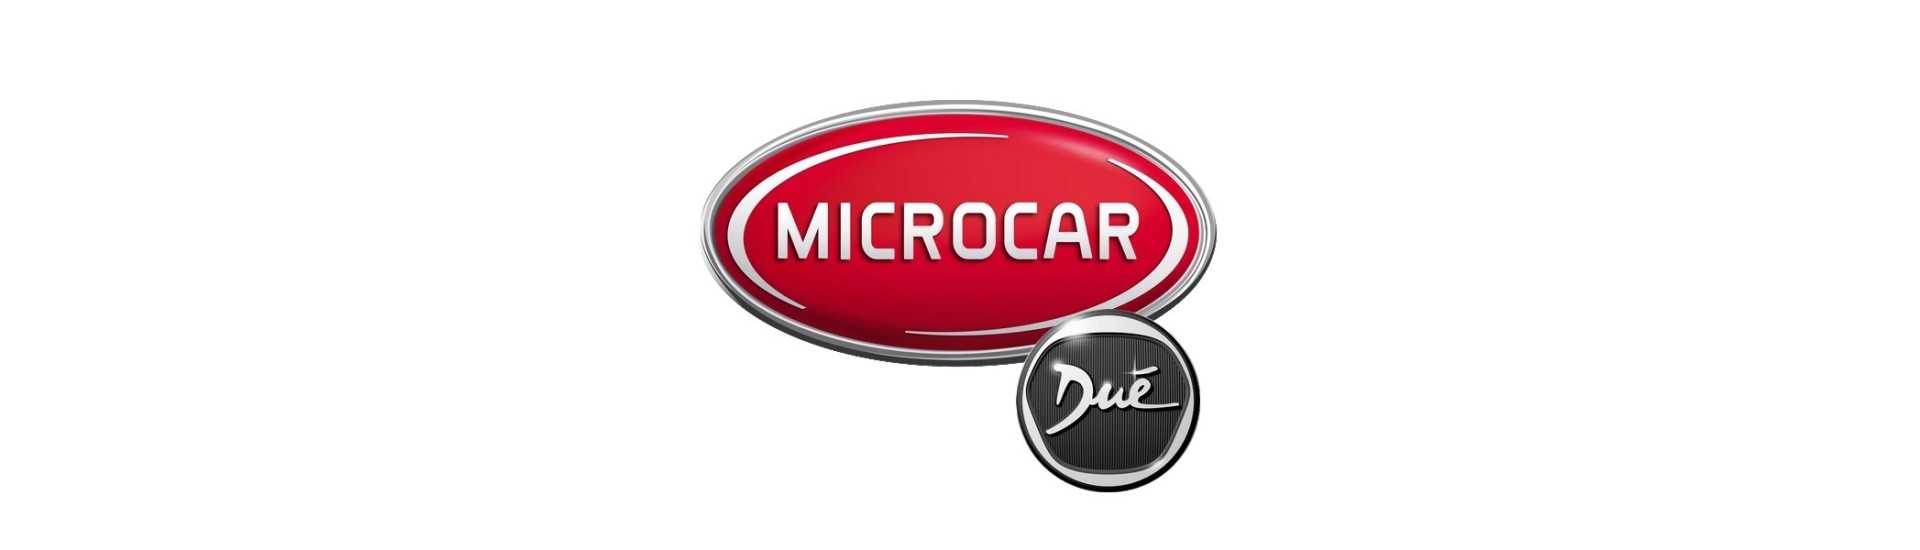 Rücken Feuer zum besten Preis für Auto ohne Lizenz Microcar Dué